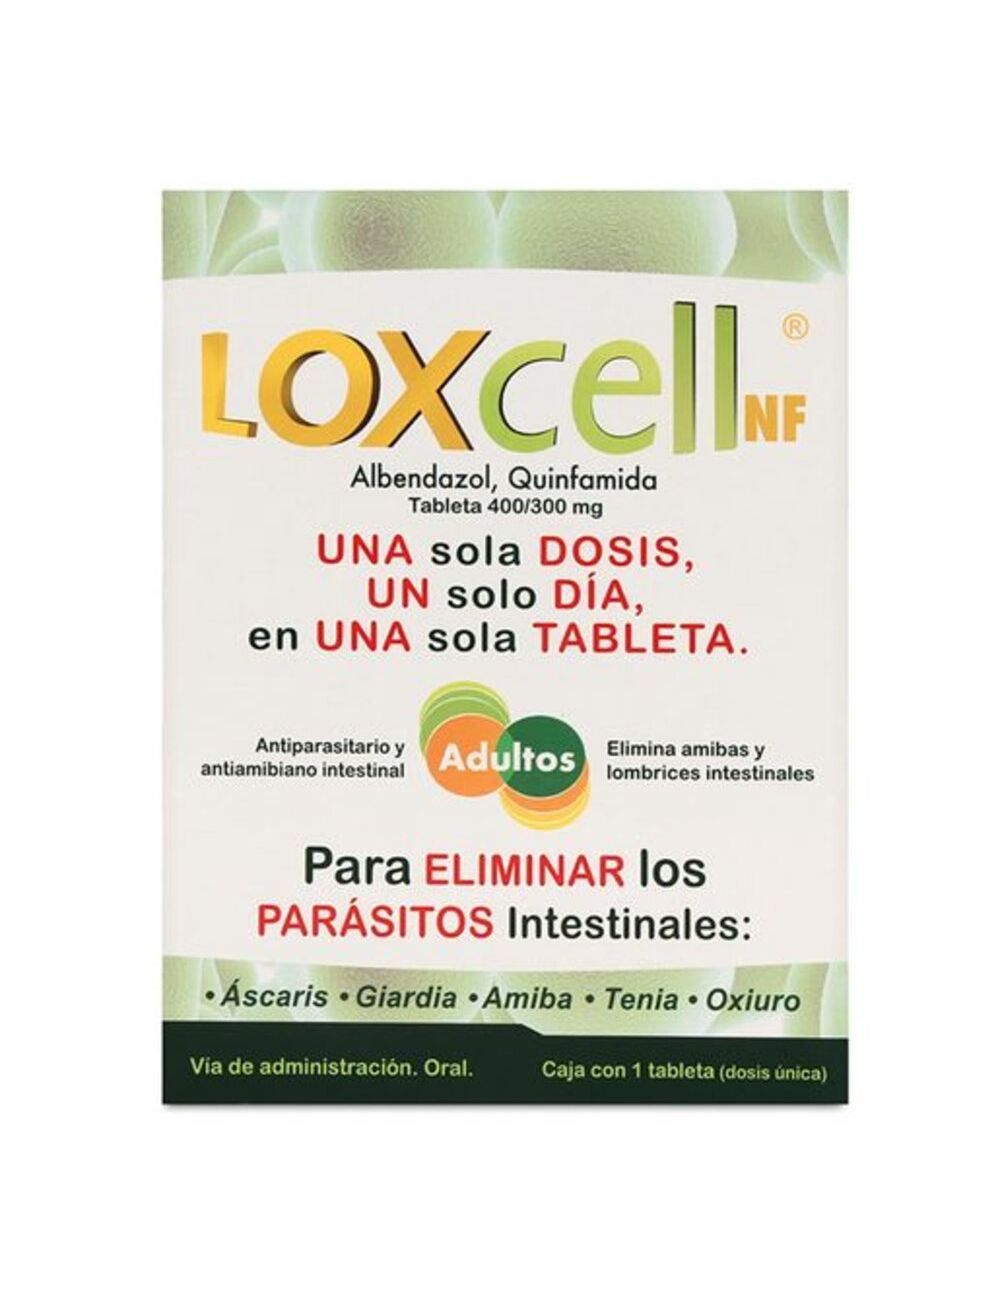 Precio Loxcell NF caja con 1 tableta | Farmalisto MX